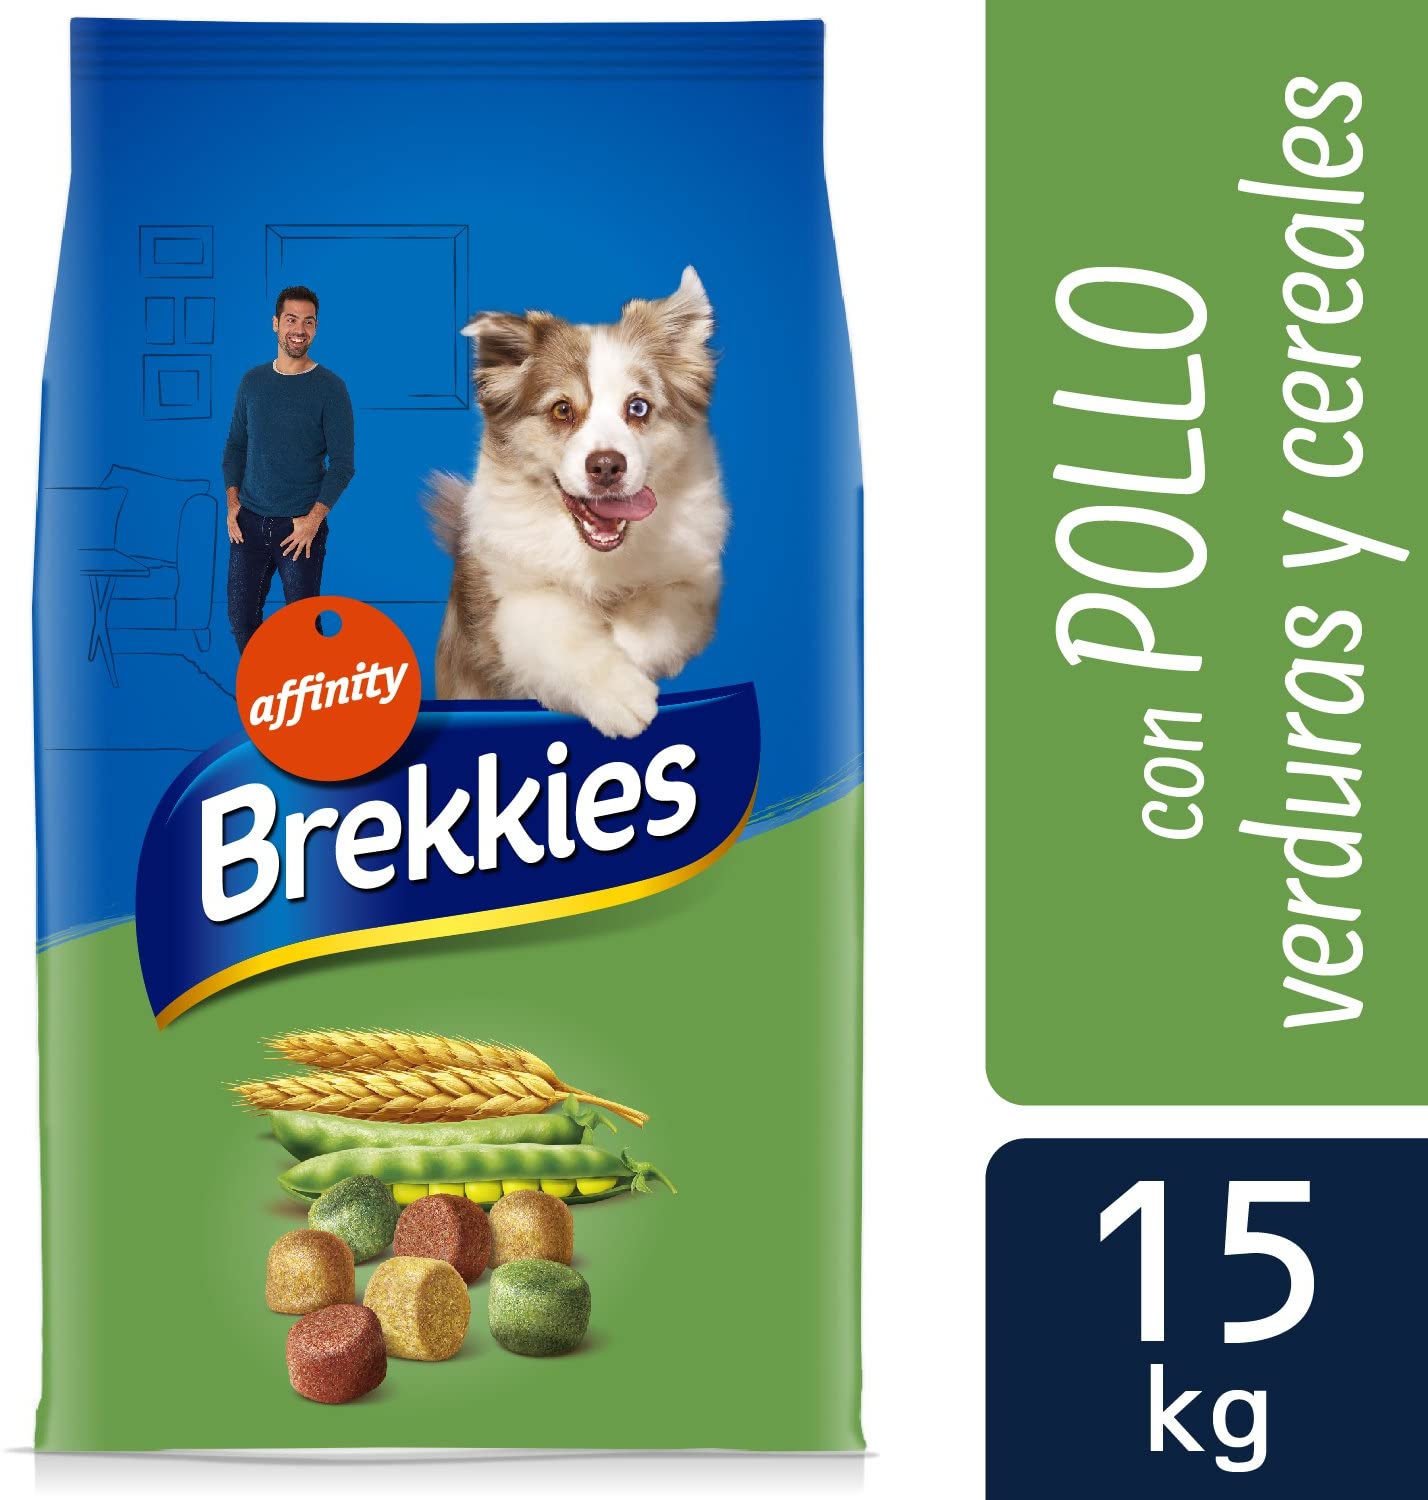  Brekkies Pienso para Perros con Pollo y Cereales - 15000 gr 